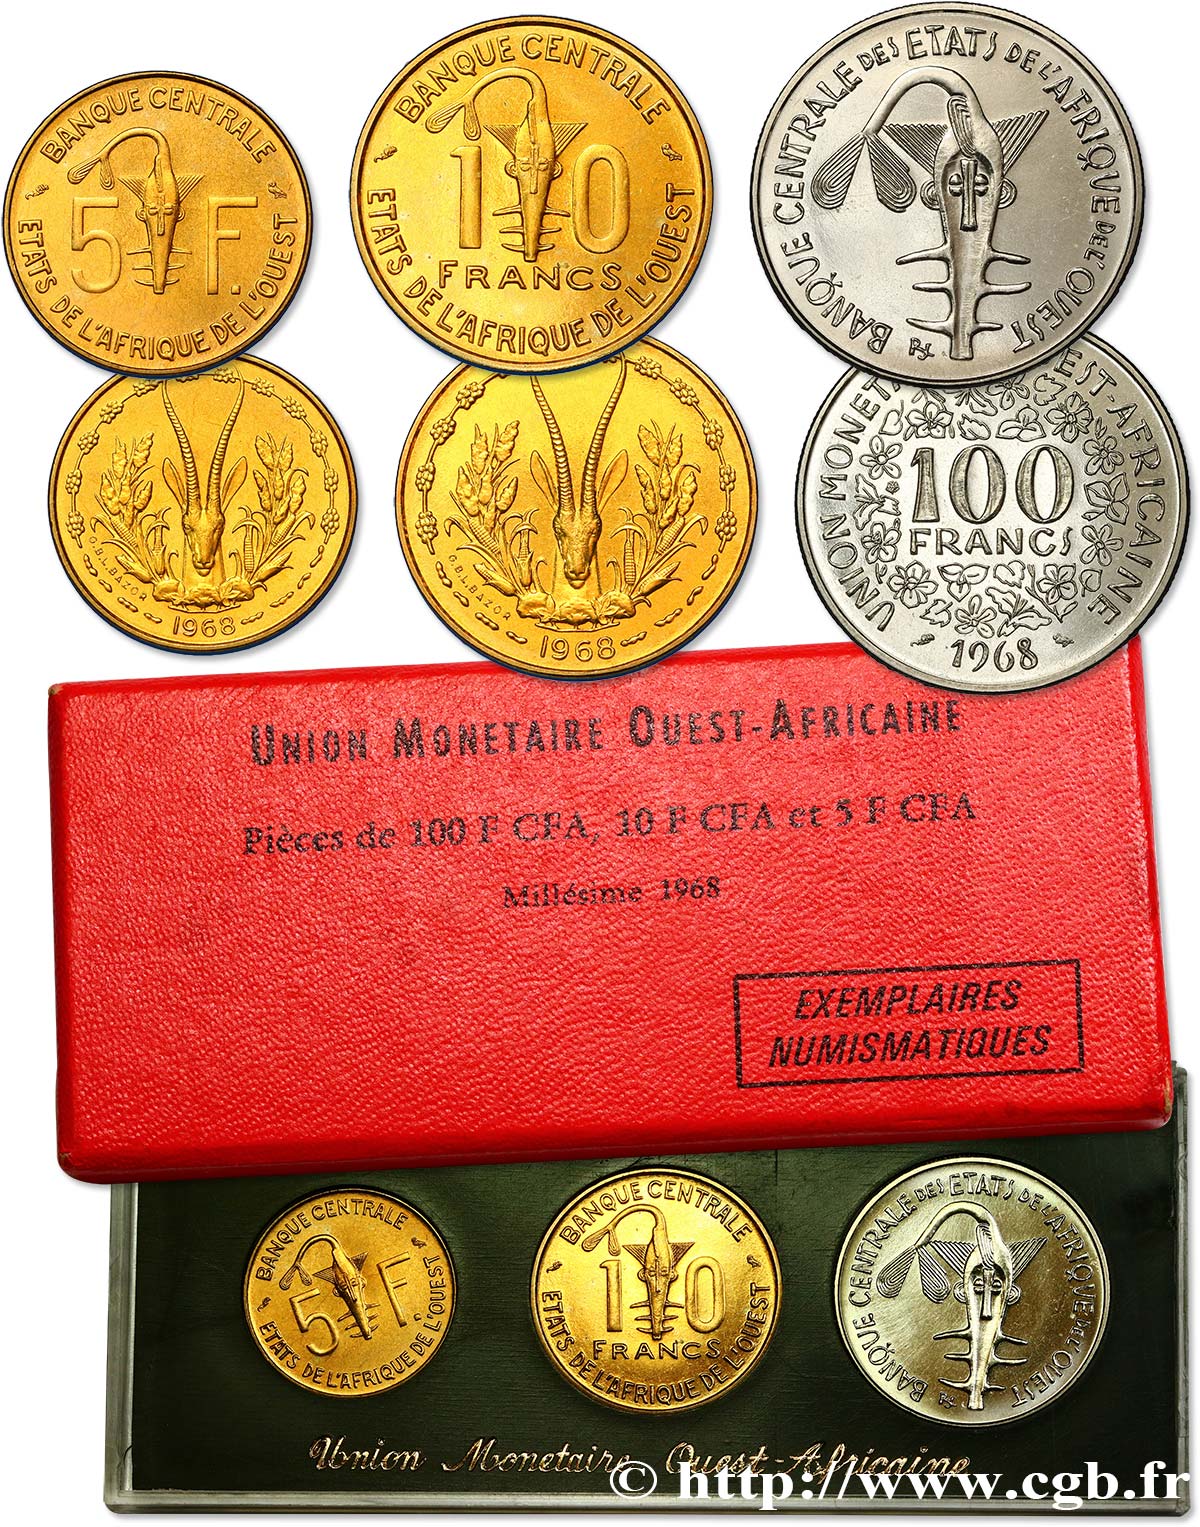 WEST AFRICAN STATES (BCEAO) Série de présentation 5, 10 et 100 Francs CFA 1968 Paris MS 